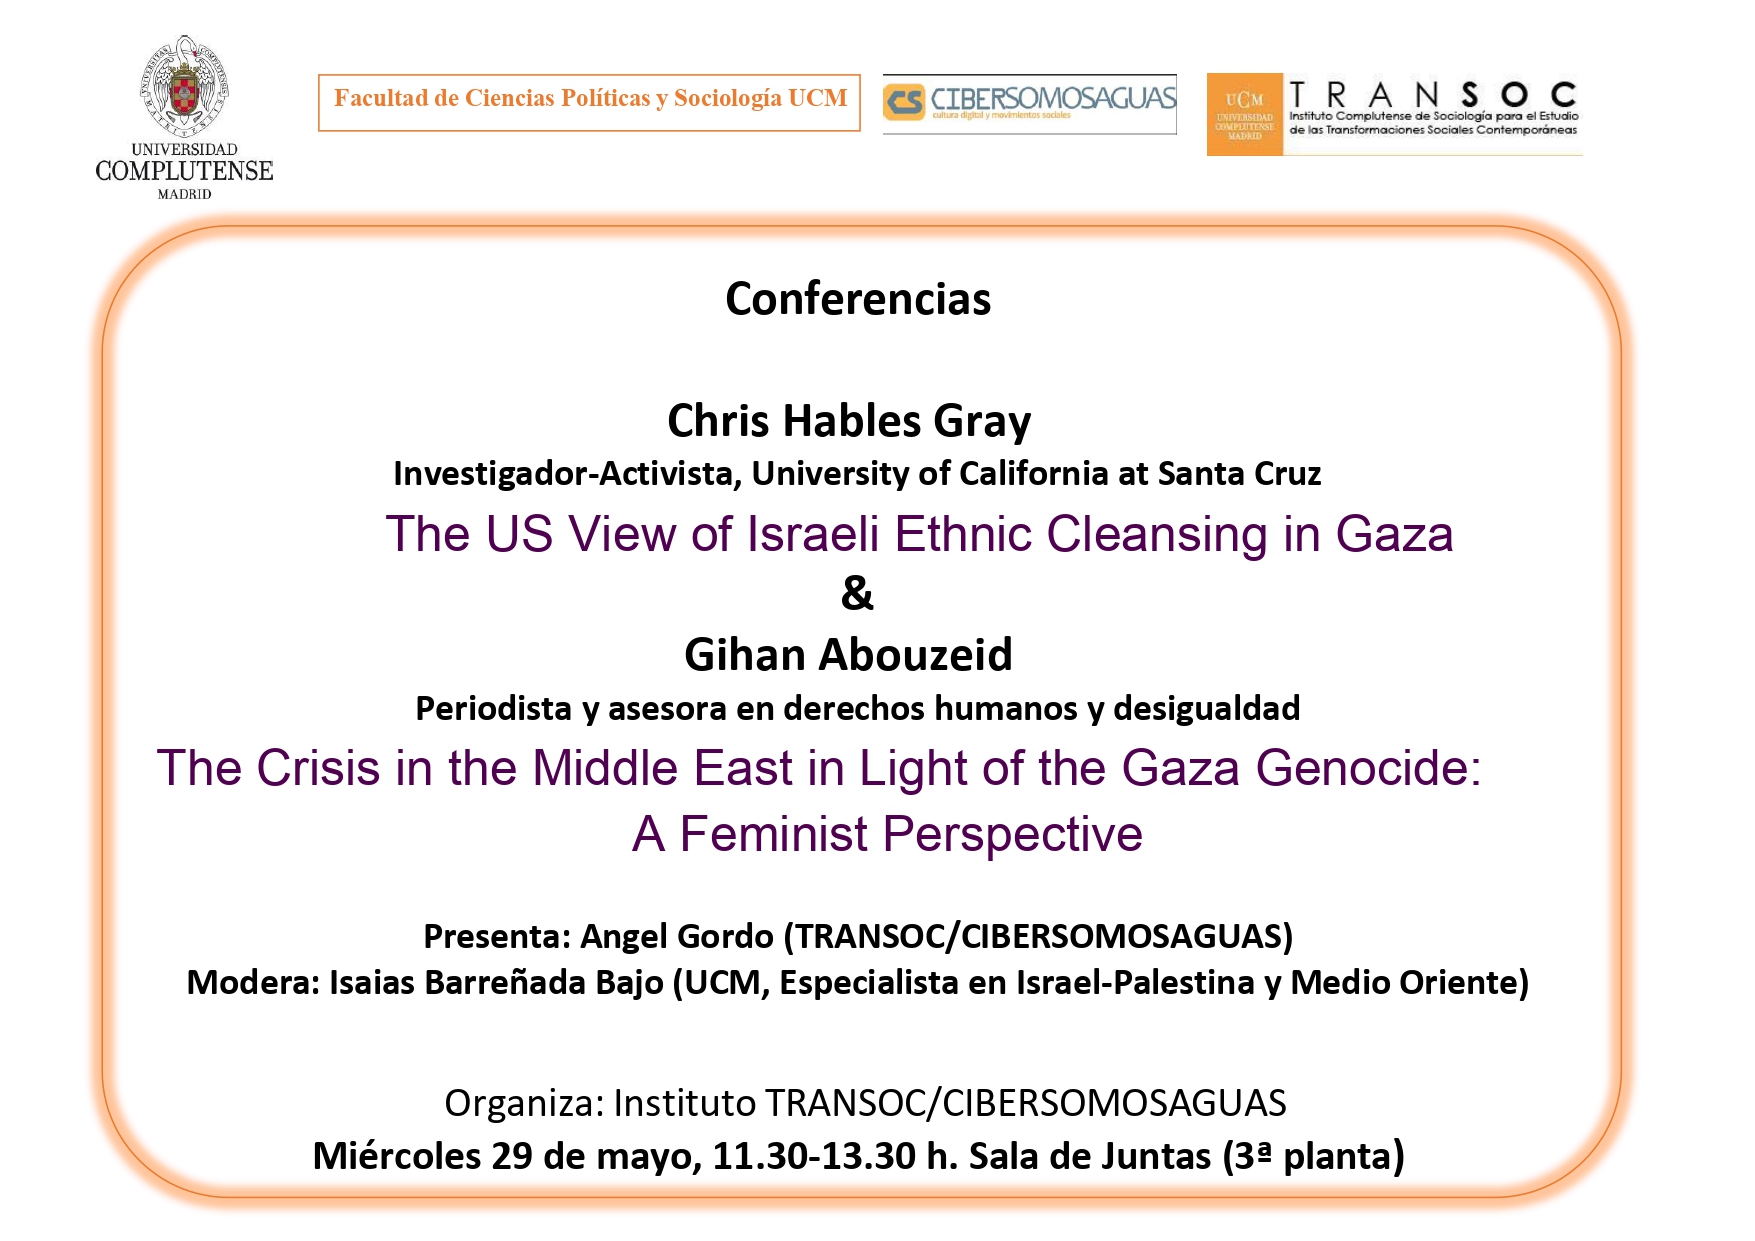 Conferencias sobre Gaza en Facultad de Políticas (UCM) a cargo de Gihan Abouzeid y Chris Hables Gray (miércoles 29 de mayo)